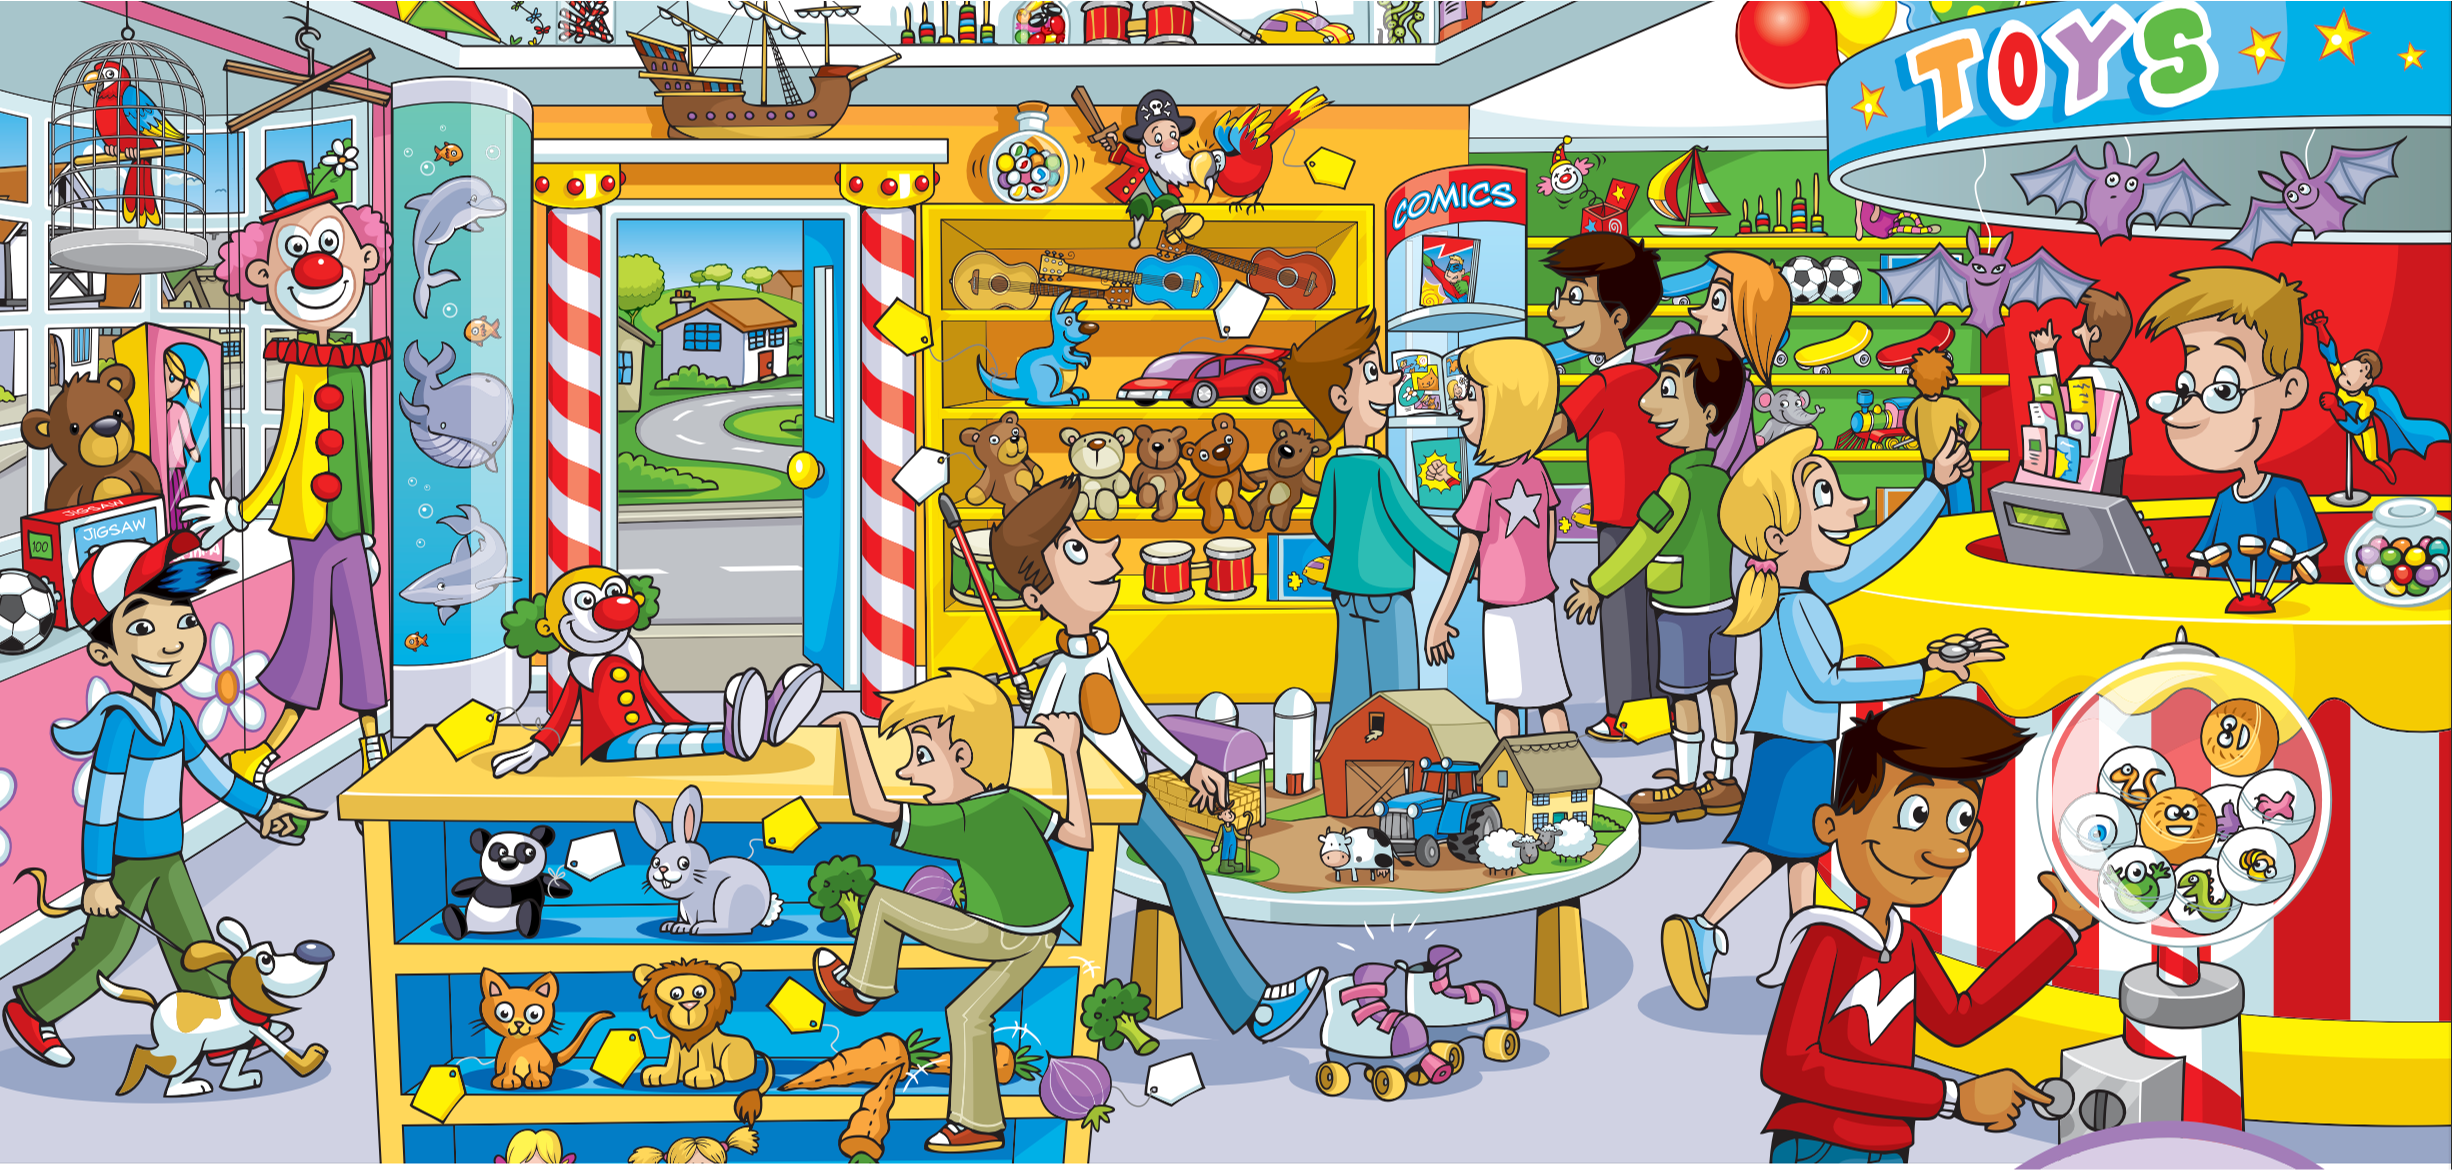 Kinds of presents. Магазин игрушек картинка для детей. Магазин игрушек рисунок. Игры на английском для детей. Задания at the Toy shop.